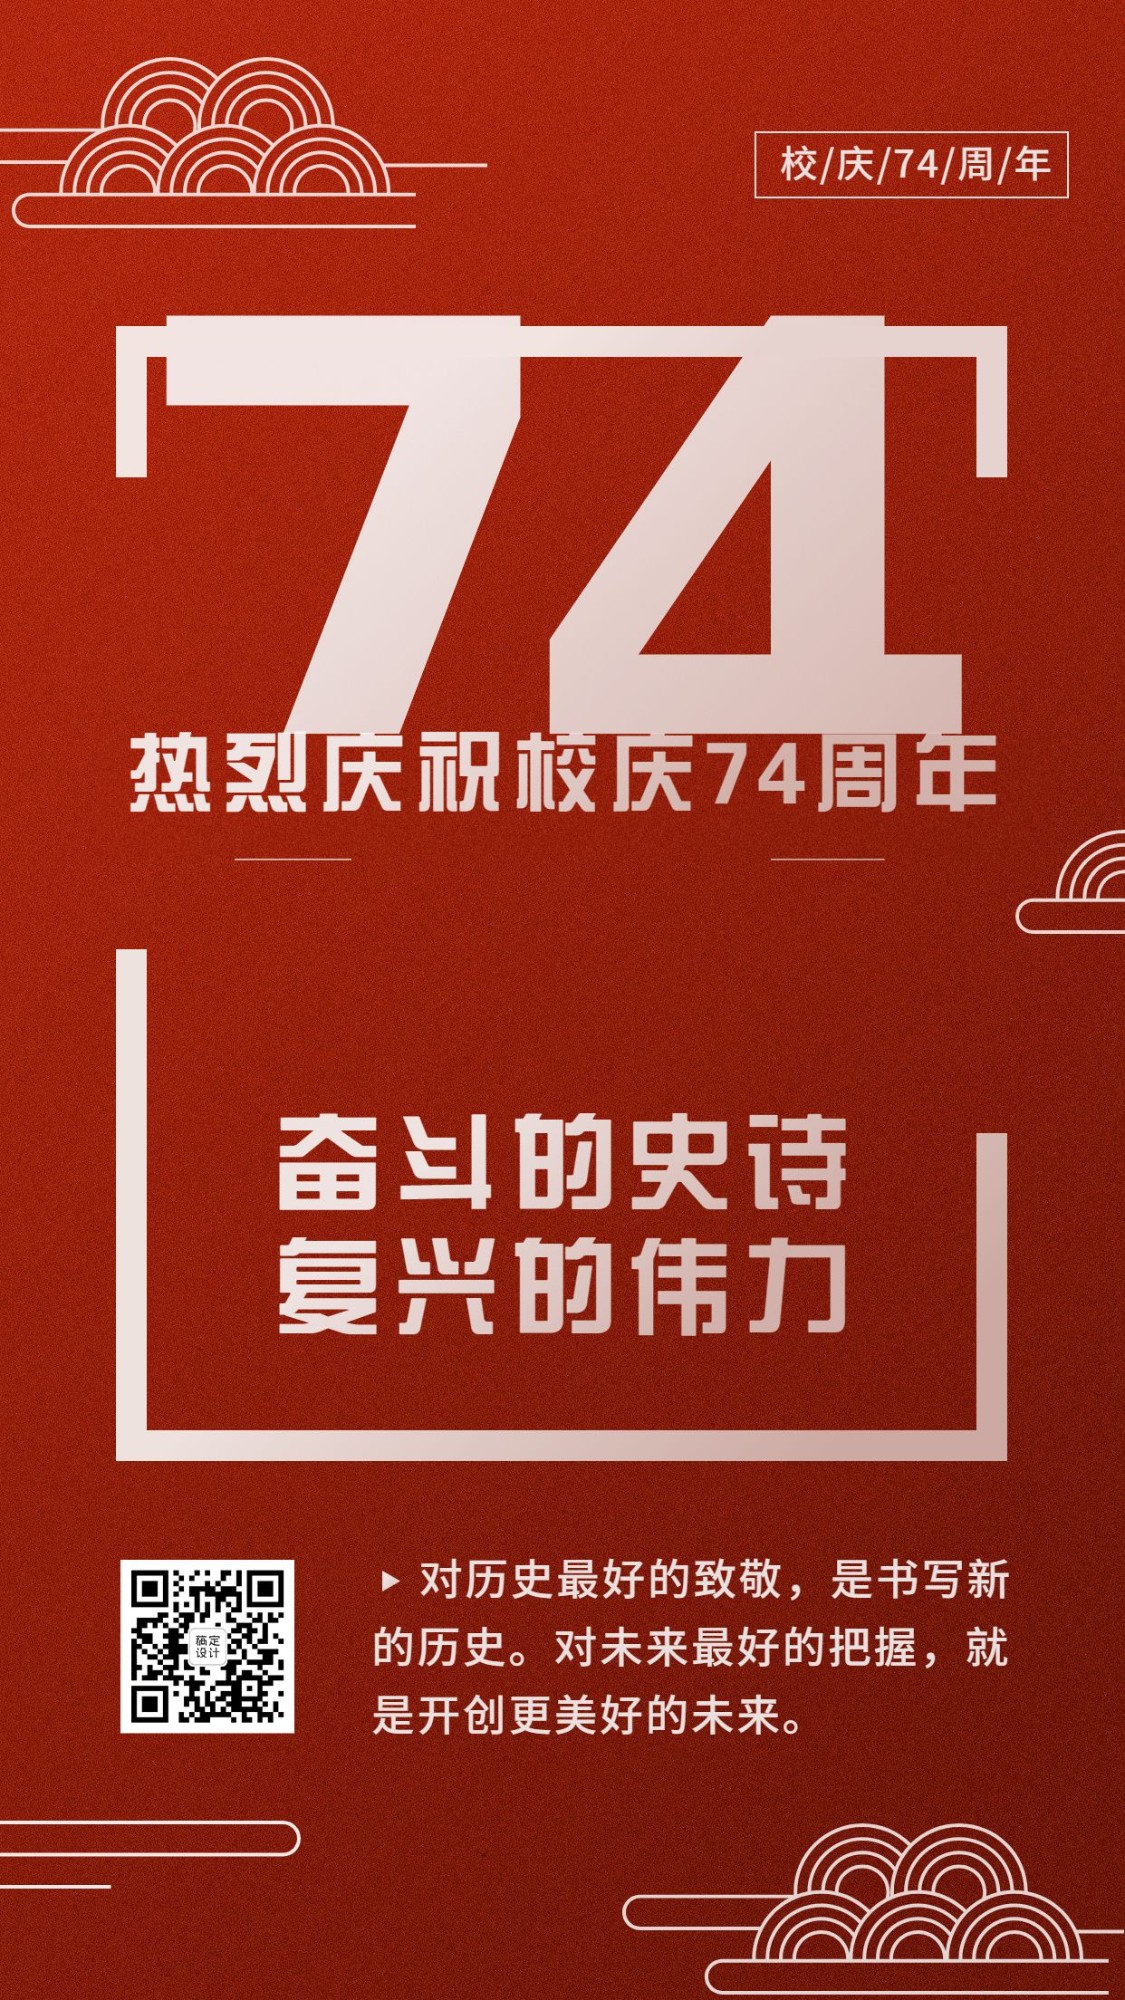 十一国庆节庆祝72周年手机海报